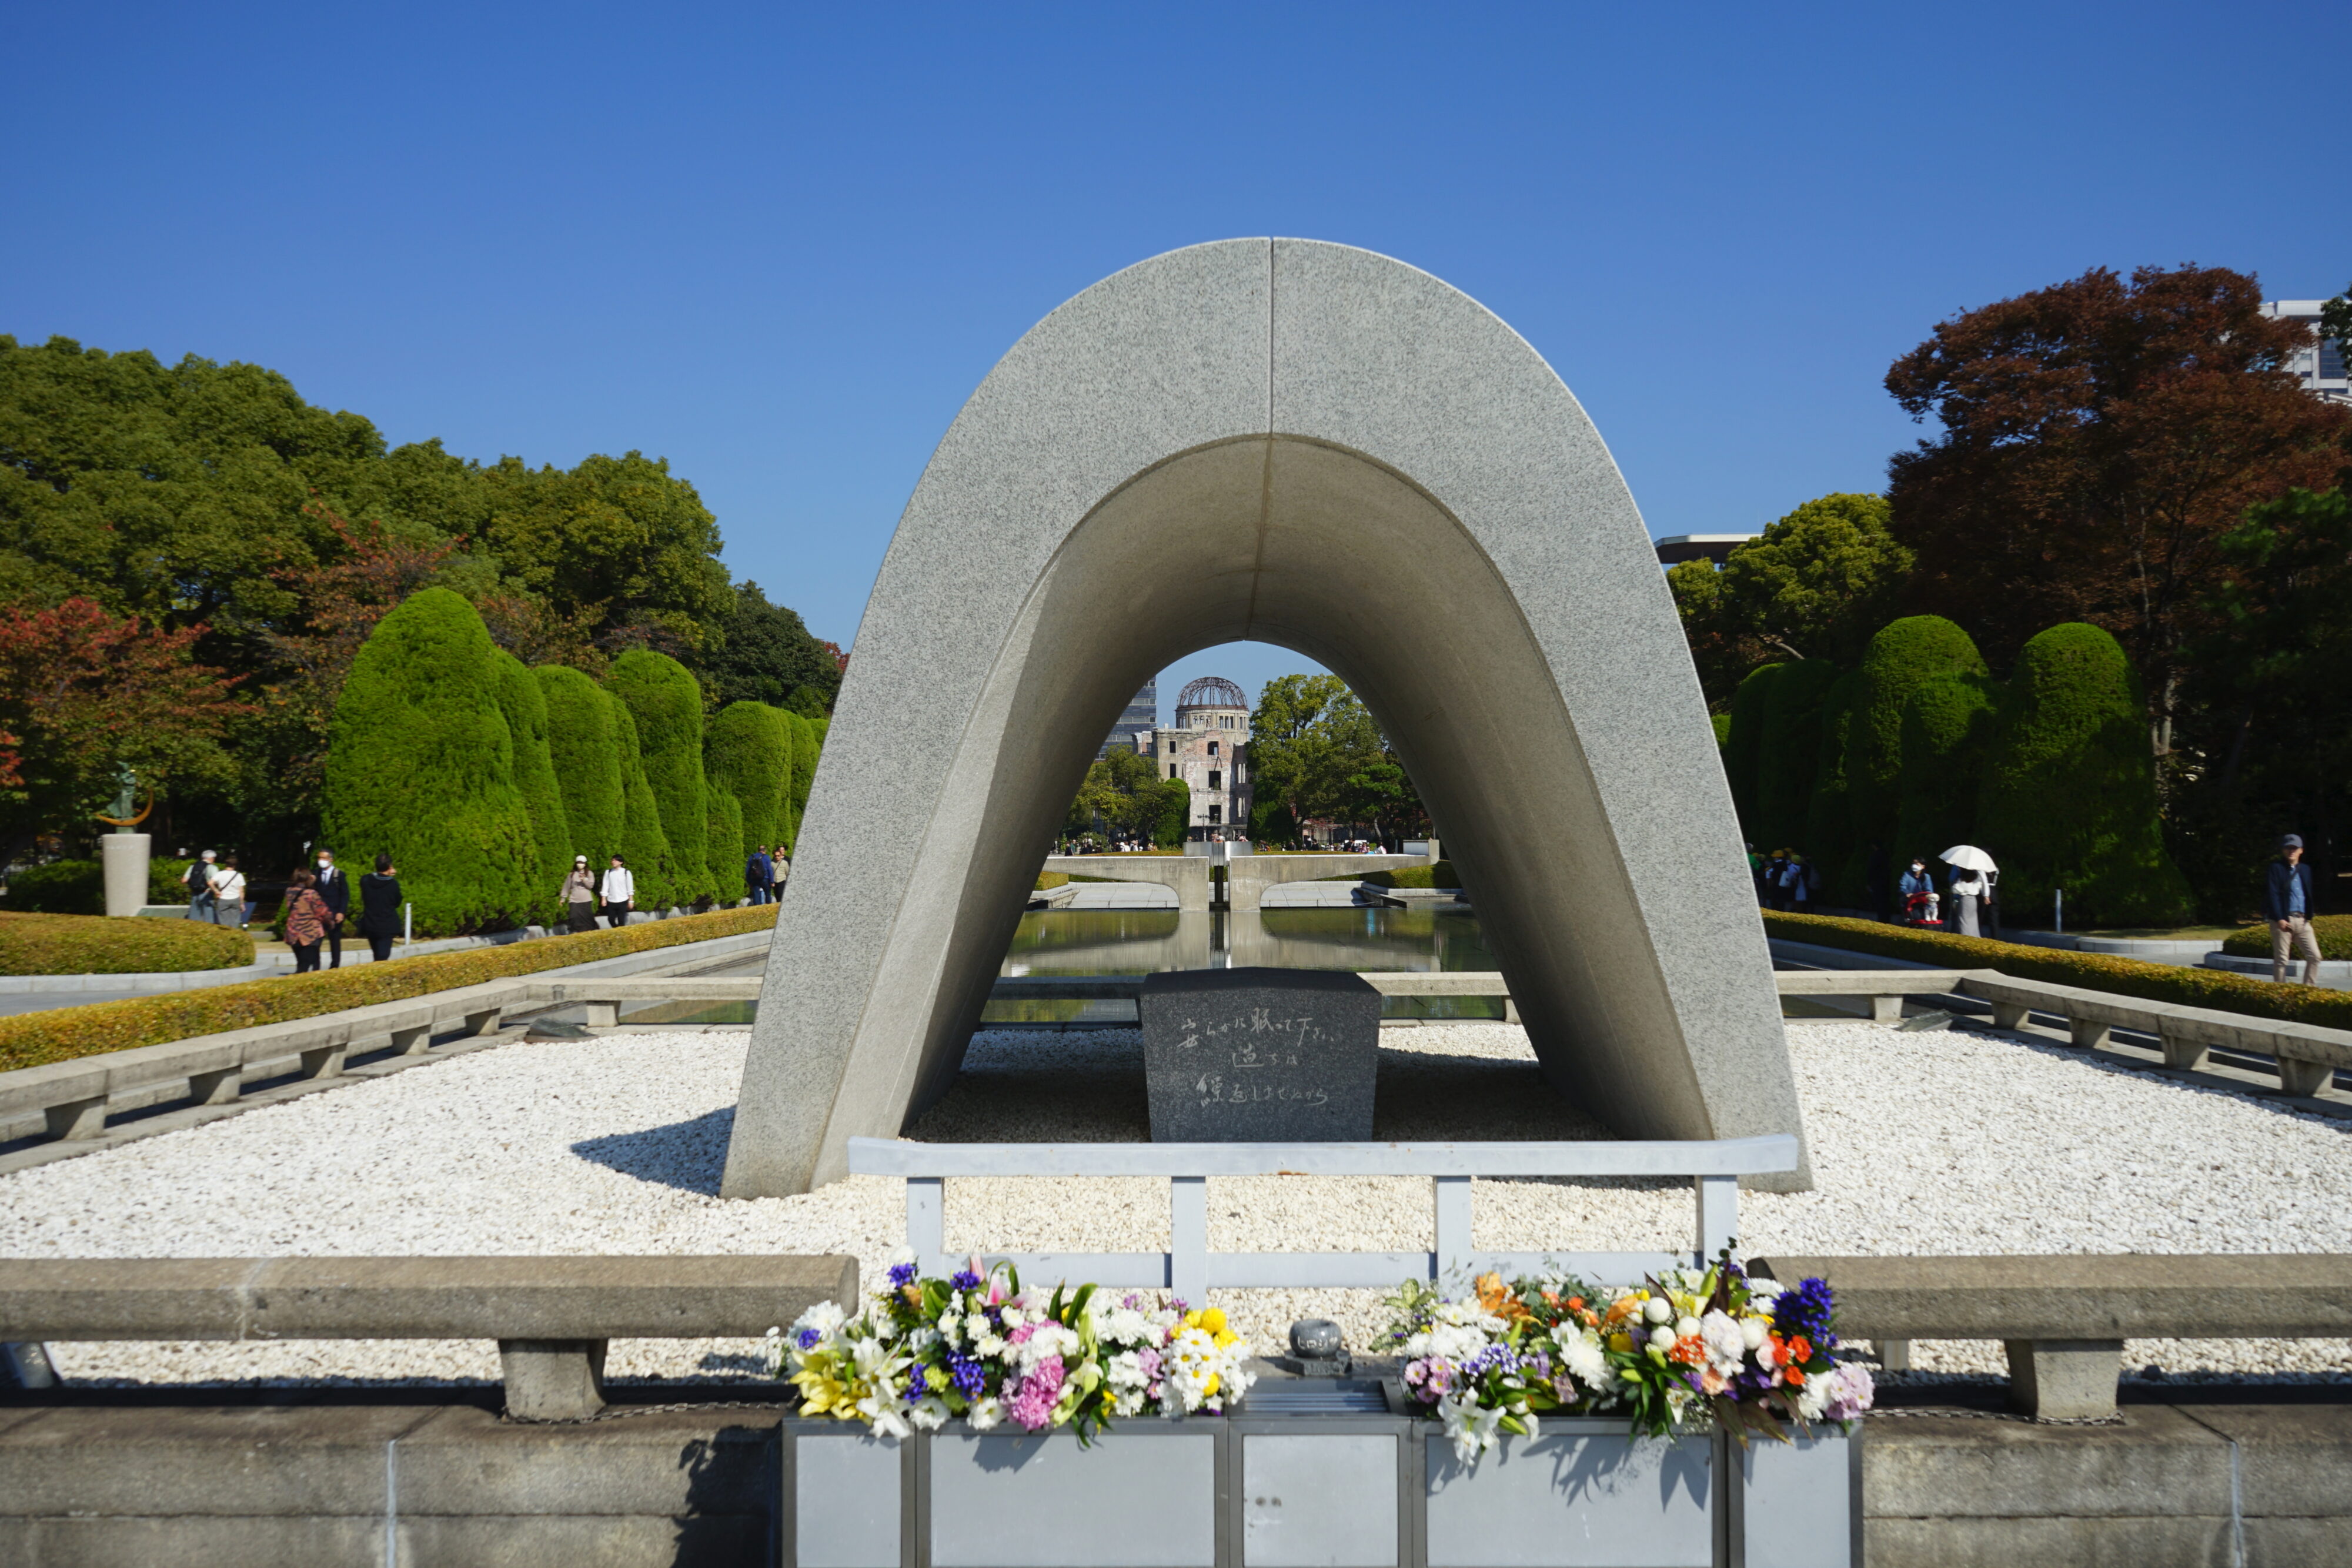 Blick auf das zentrale Erinnerungsmonument im Friedenspark: Ein Betonbogen steht auf eine mit Kieselsteinen bedeckten Fläche. Durch den Bogen lässt sich im Hintergrund die Atombombenkuppel erkennen.